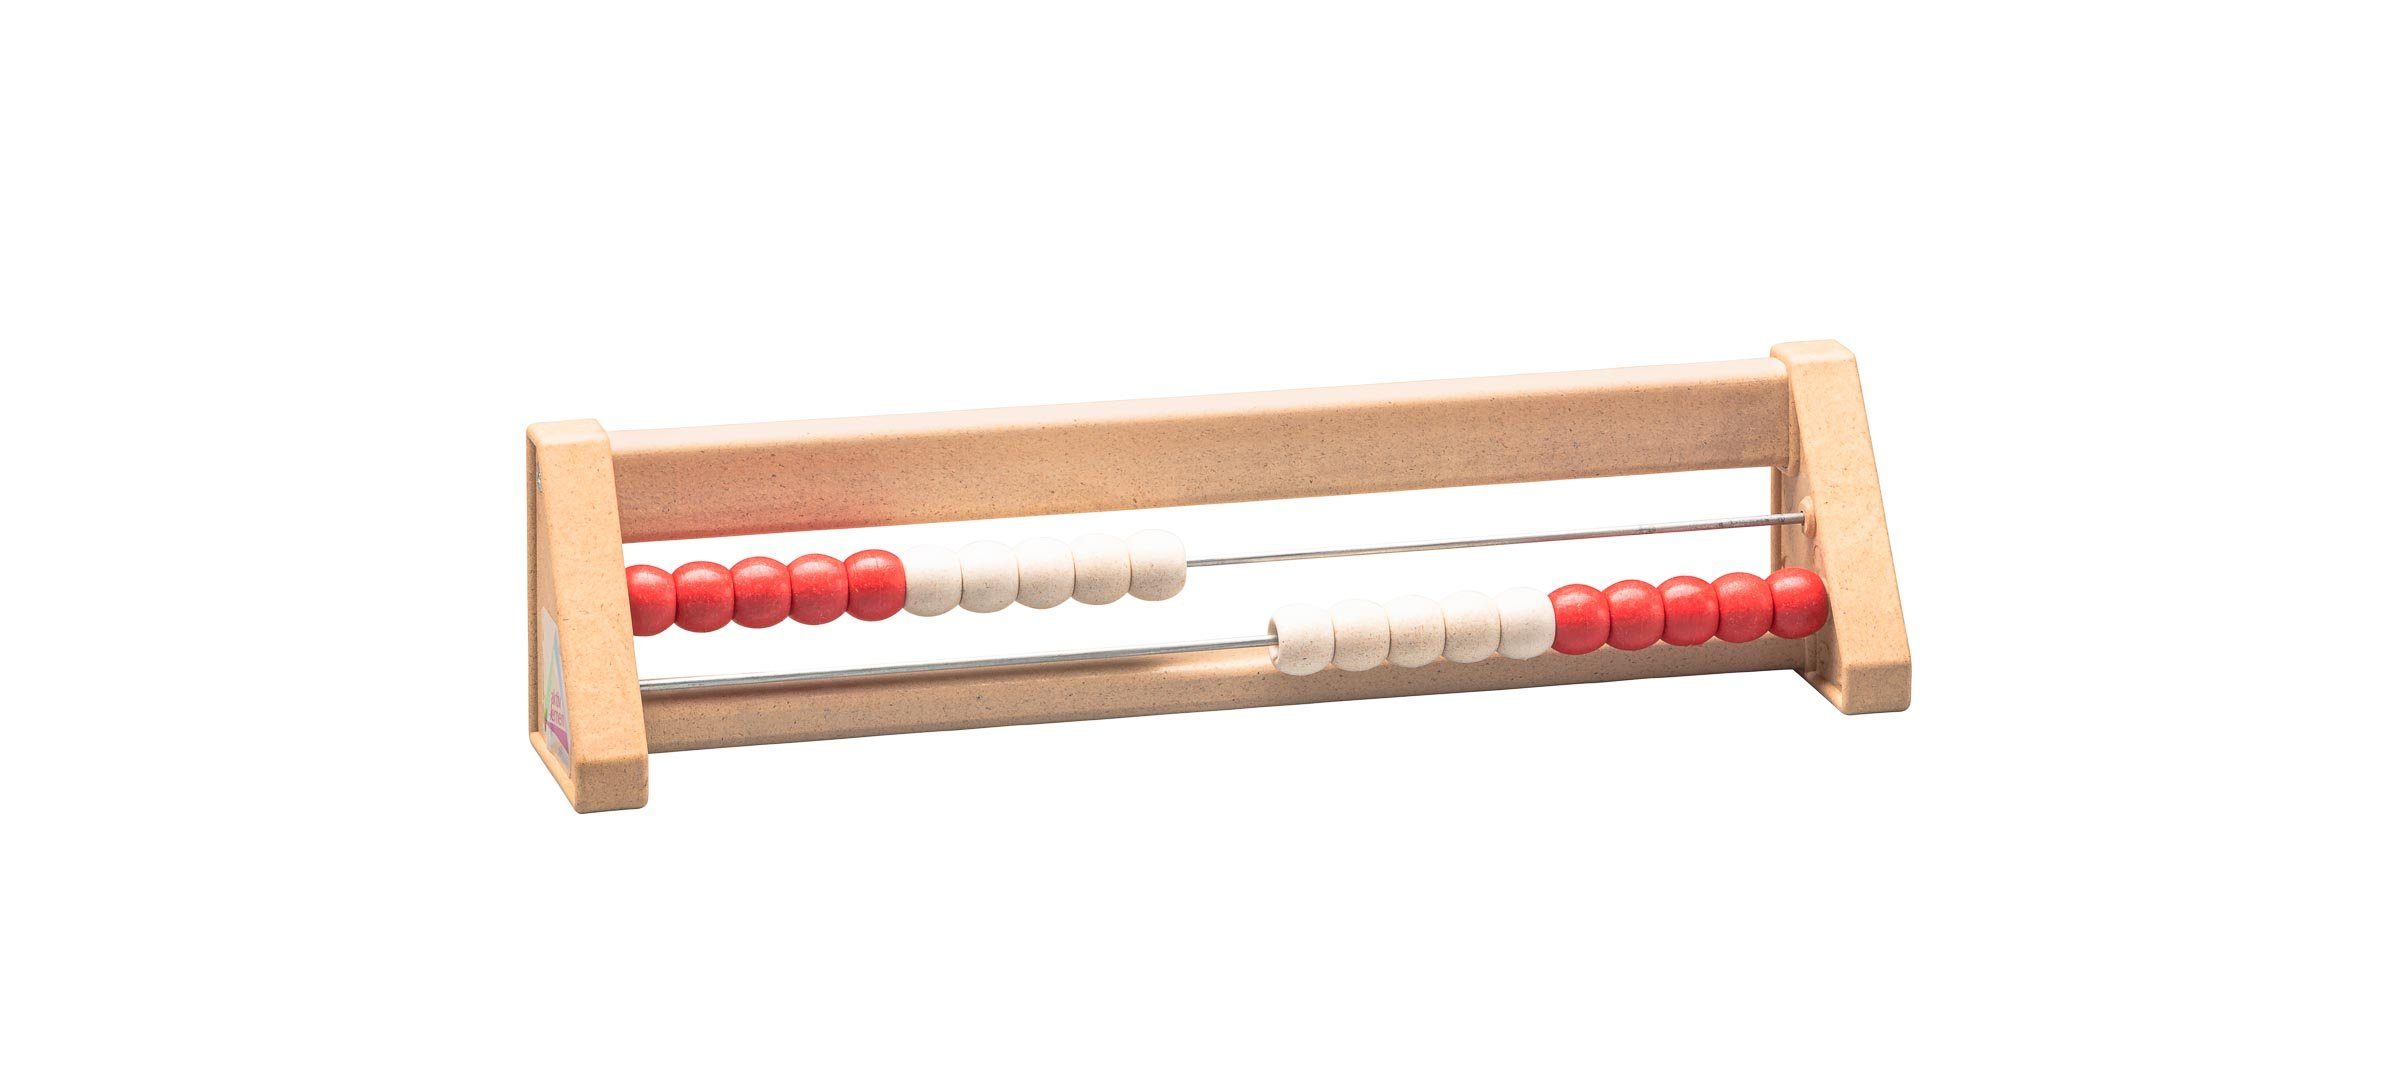 rot/weiß 20er Zahlenraum, RE-Plastic® Lernspielzeug lernen  RE-Wood® Rechenrahmen aktiv Wissner® Rechenschieber, Abakus